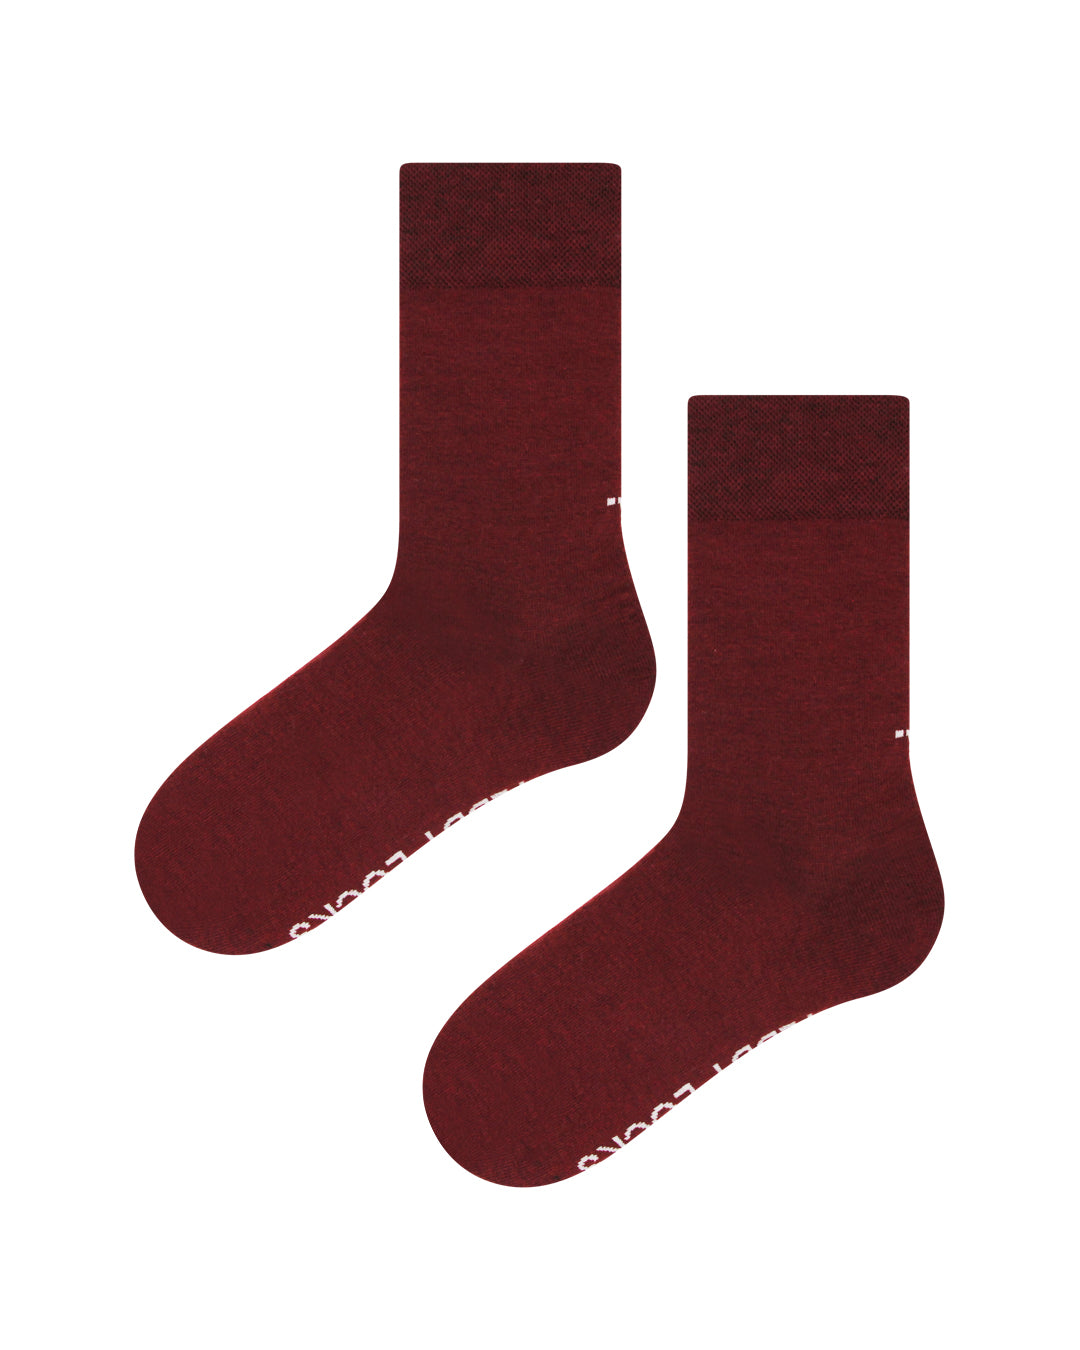 Burgundy everyday crew sock for men. Socks that don't get holes.